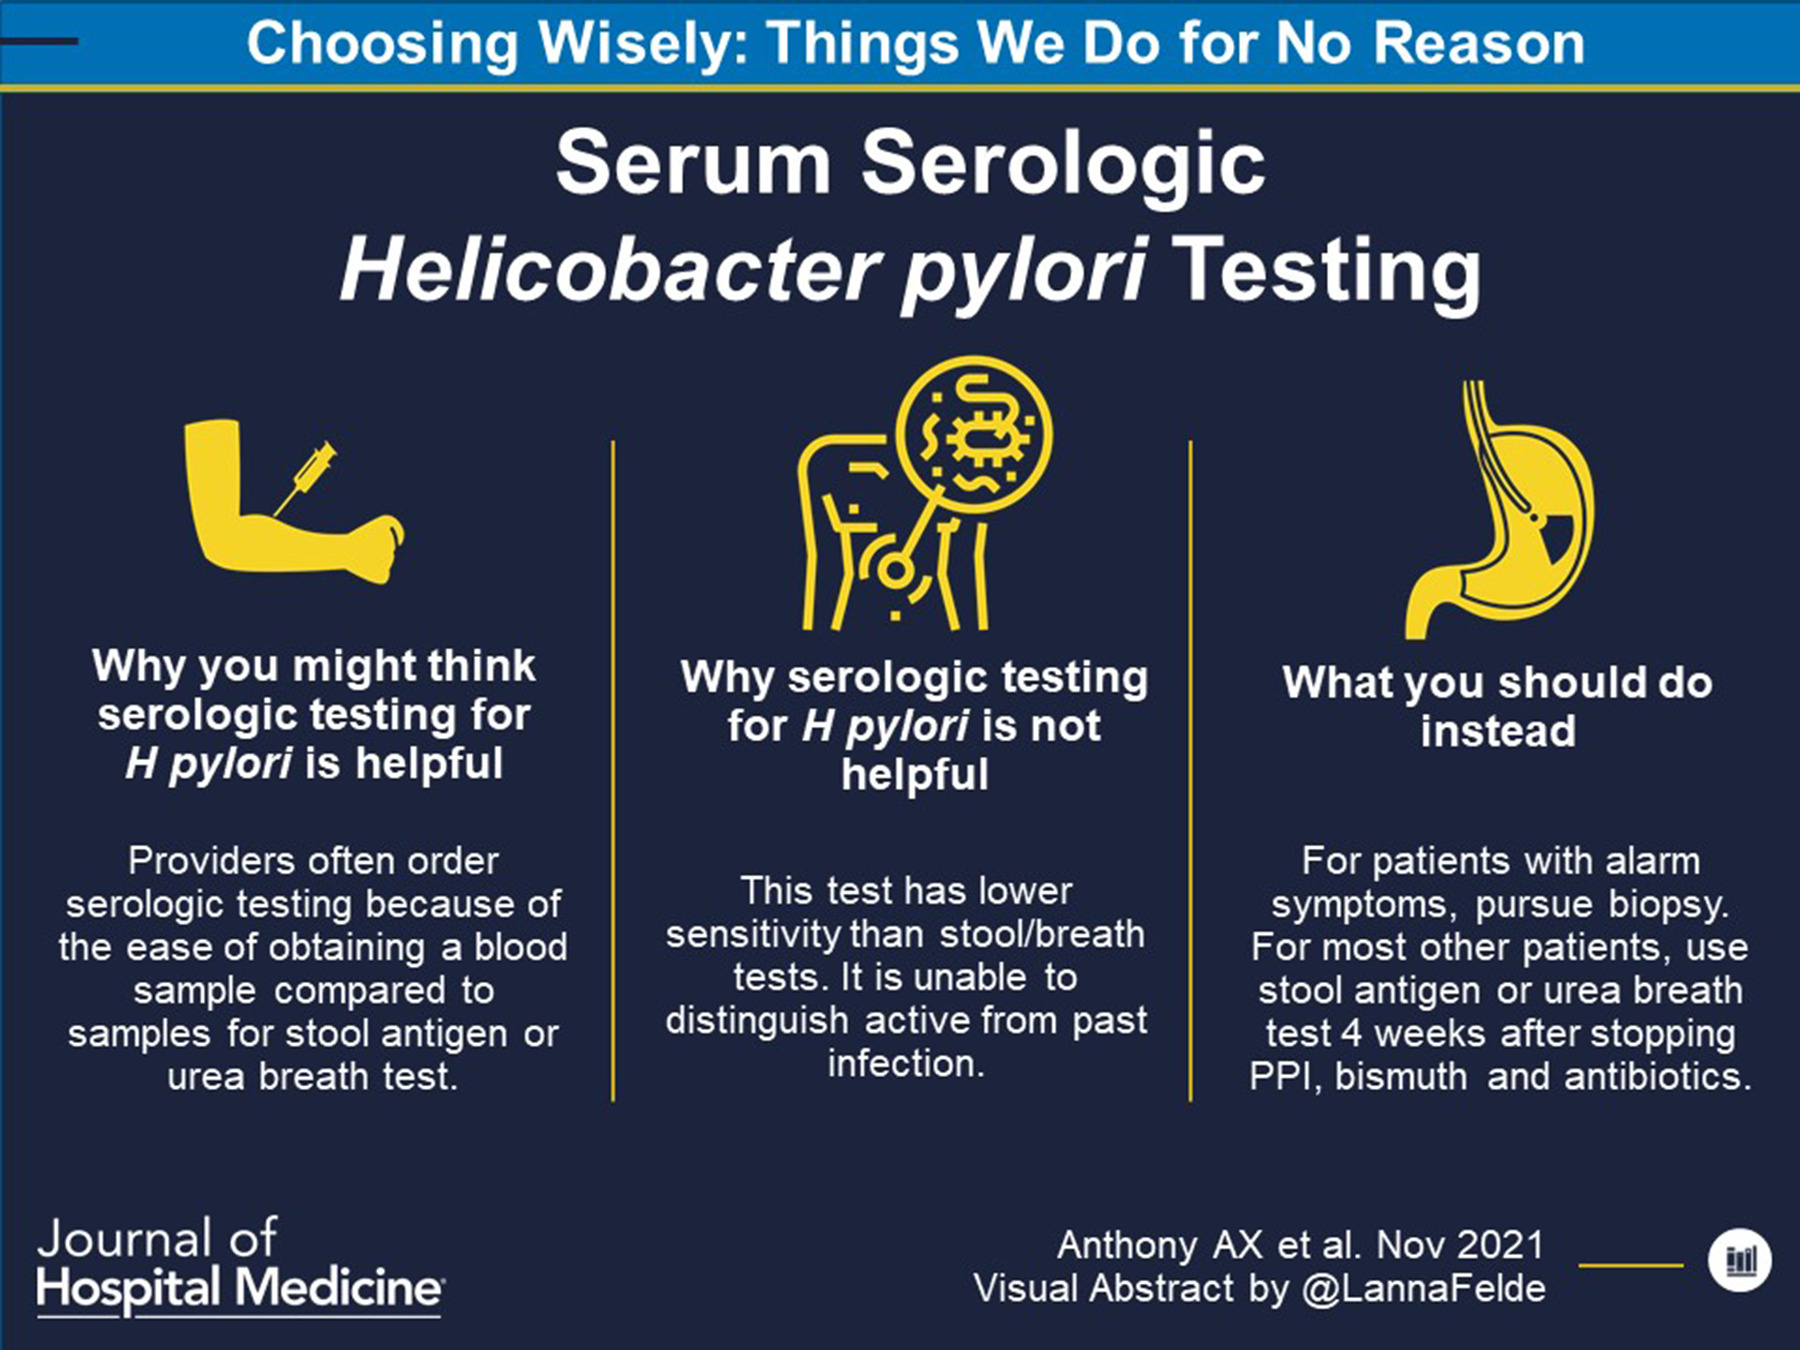 Things We Do for No Reason™: Serum Serologic Helicobacter pylori Testing